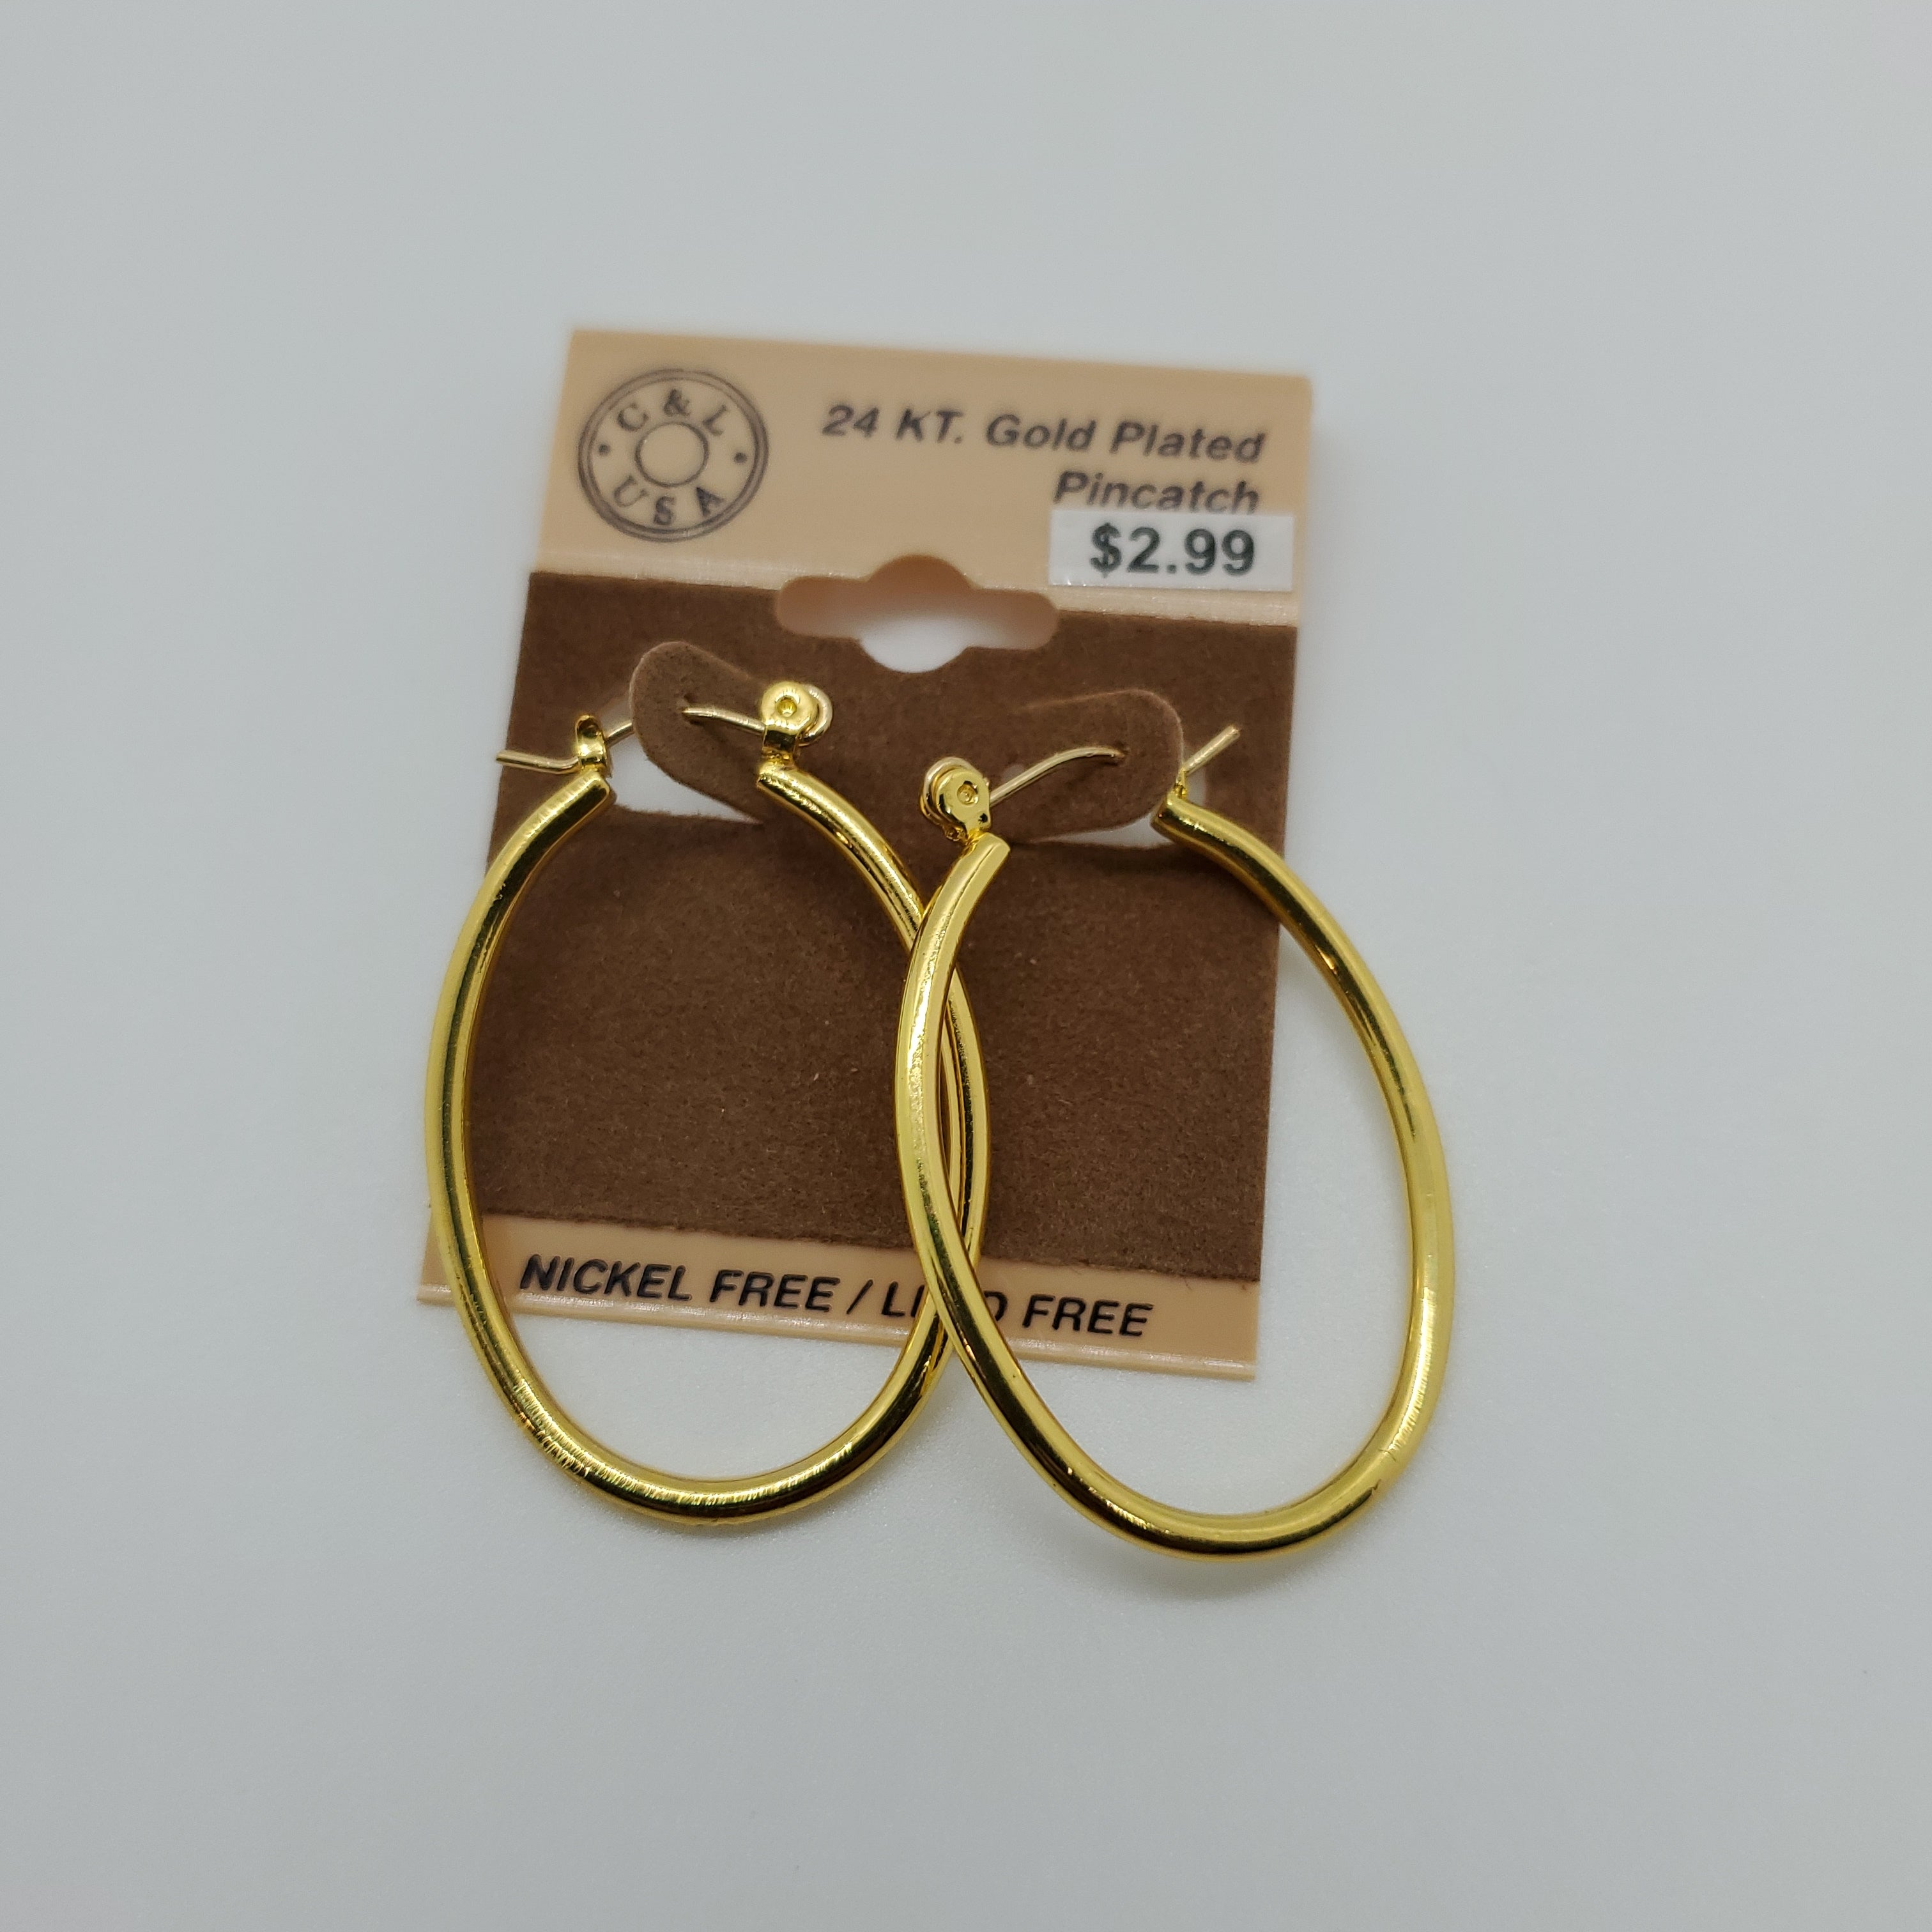 24KT Gold Plated Pincatch Hoop Earrings NPK124 - Beauty Bar & Supply